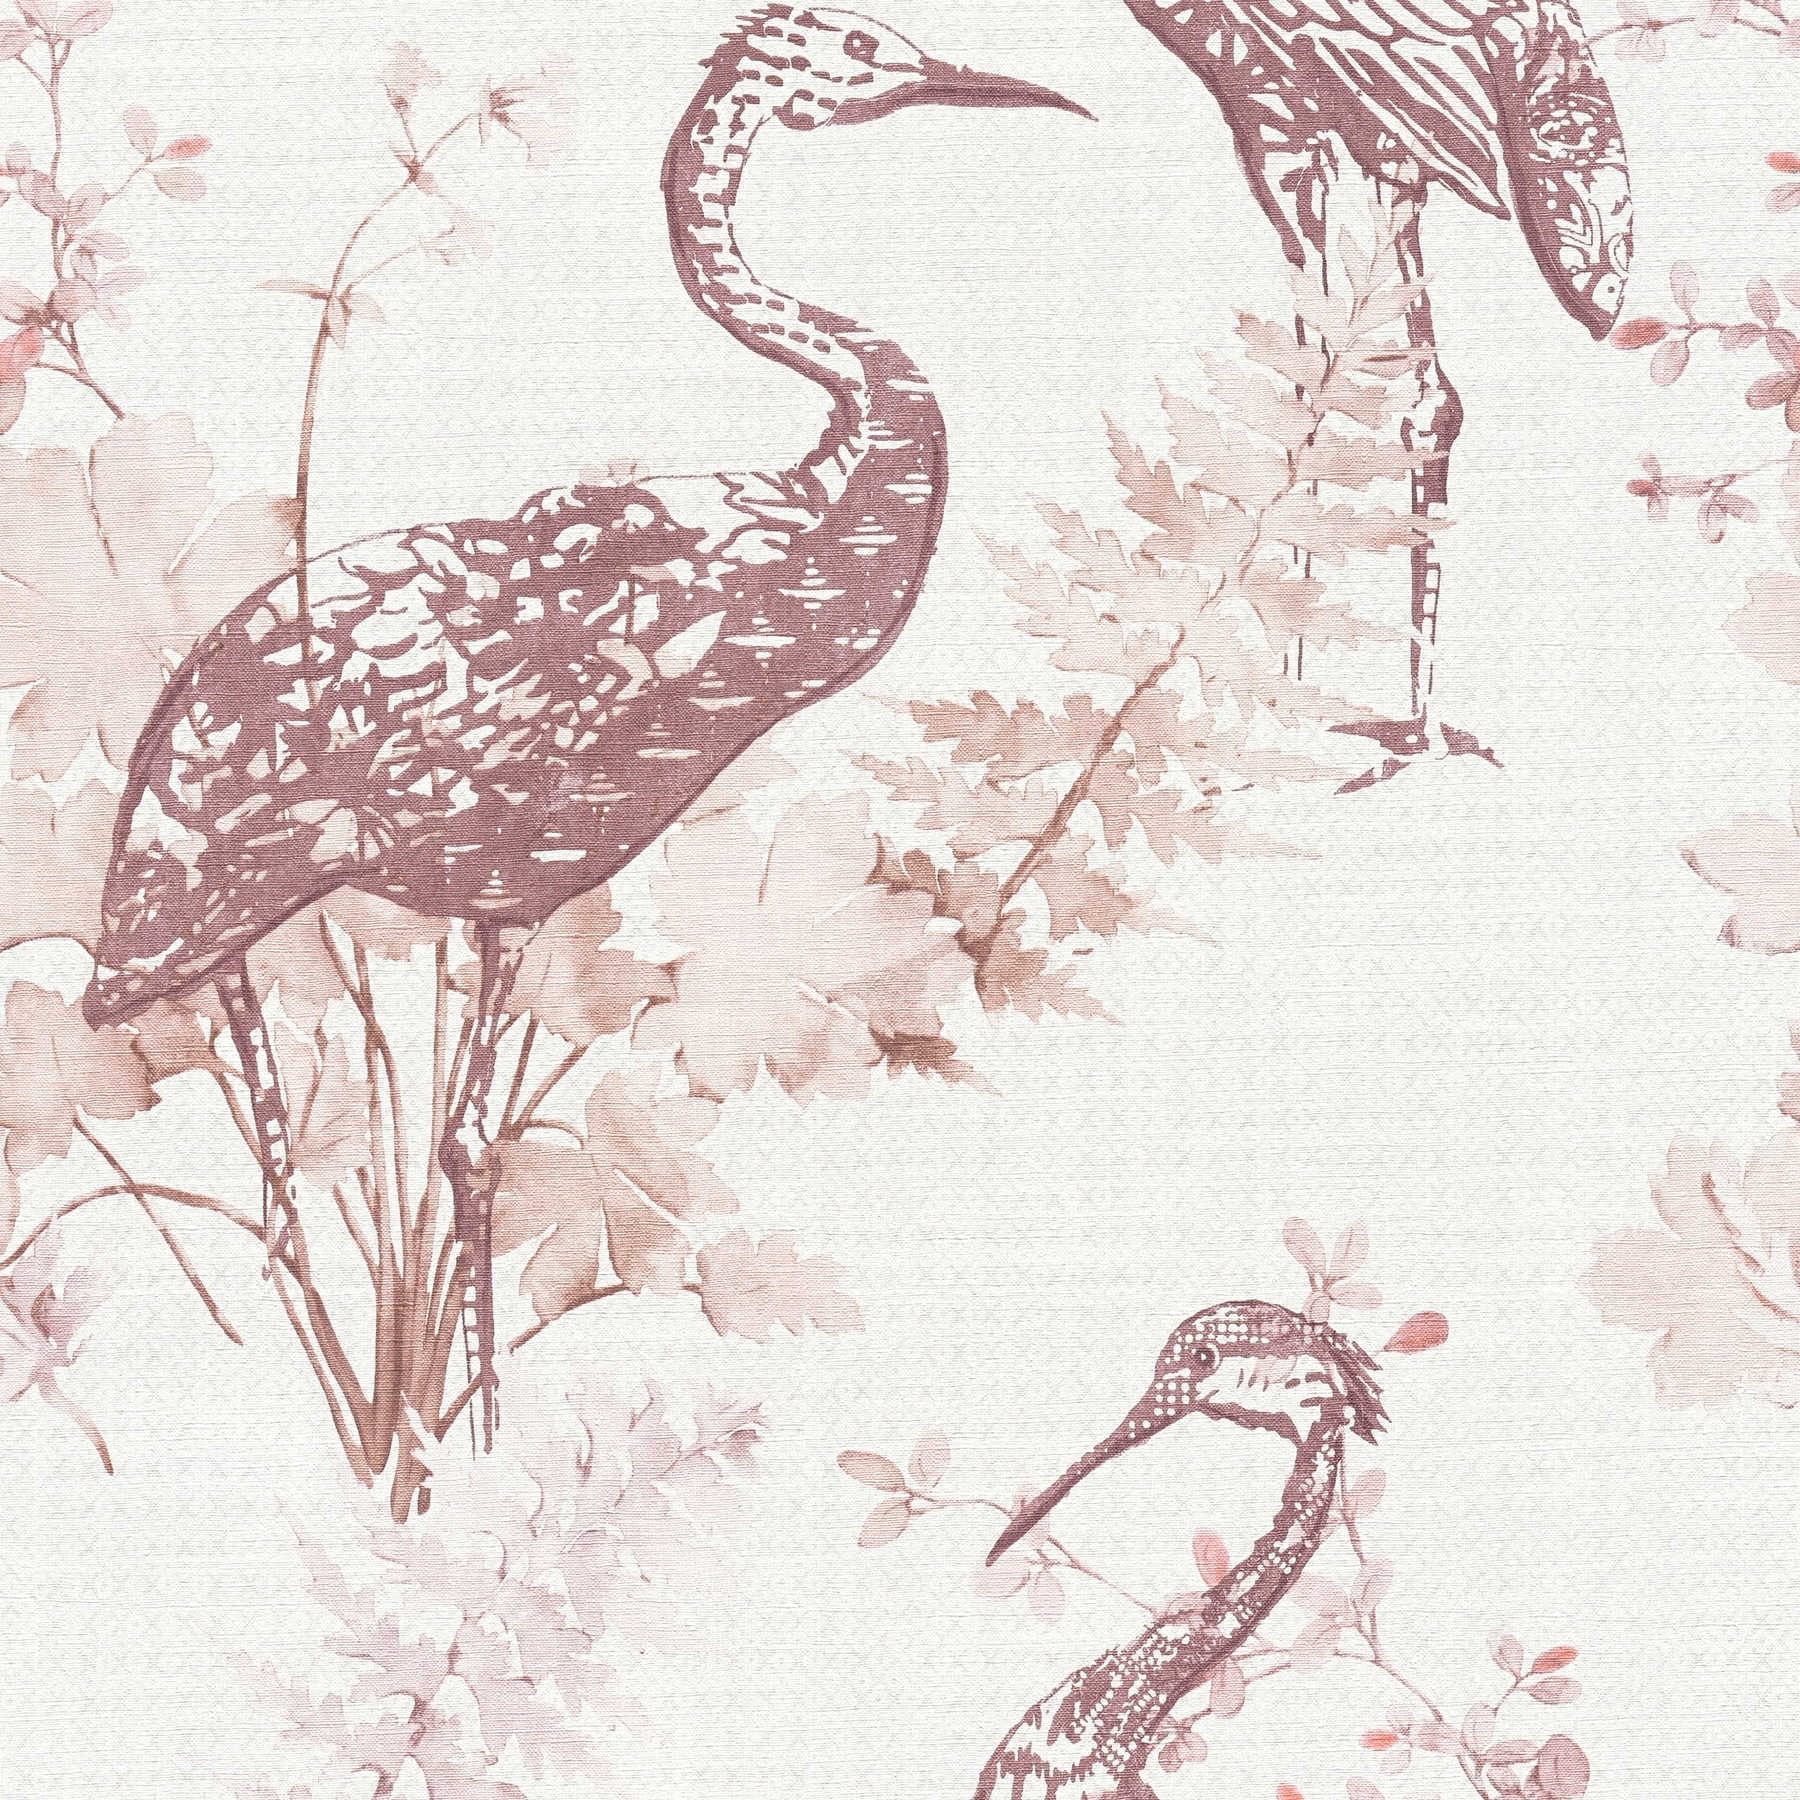         behang natuur vogels & bladeren in aquarelstijl - beige, roze
    